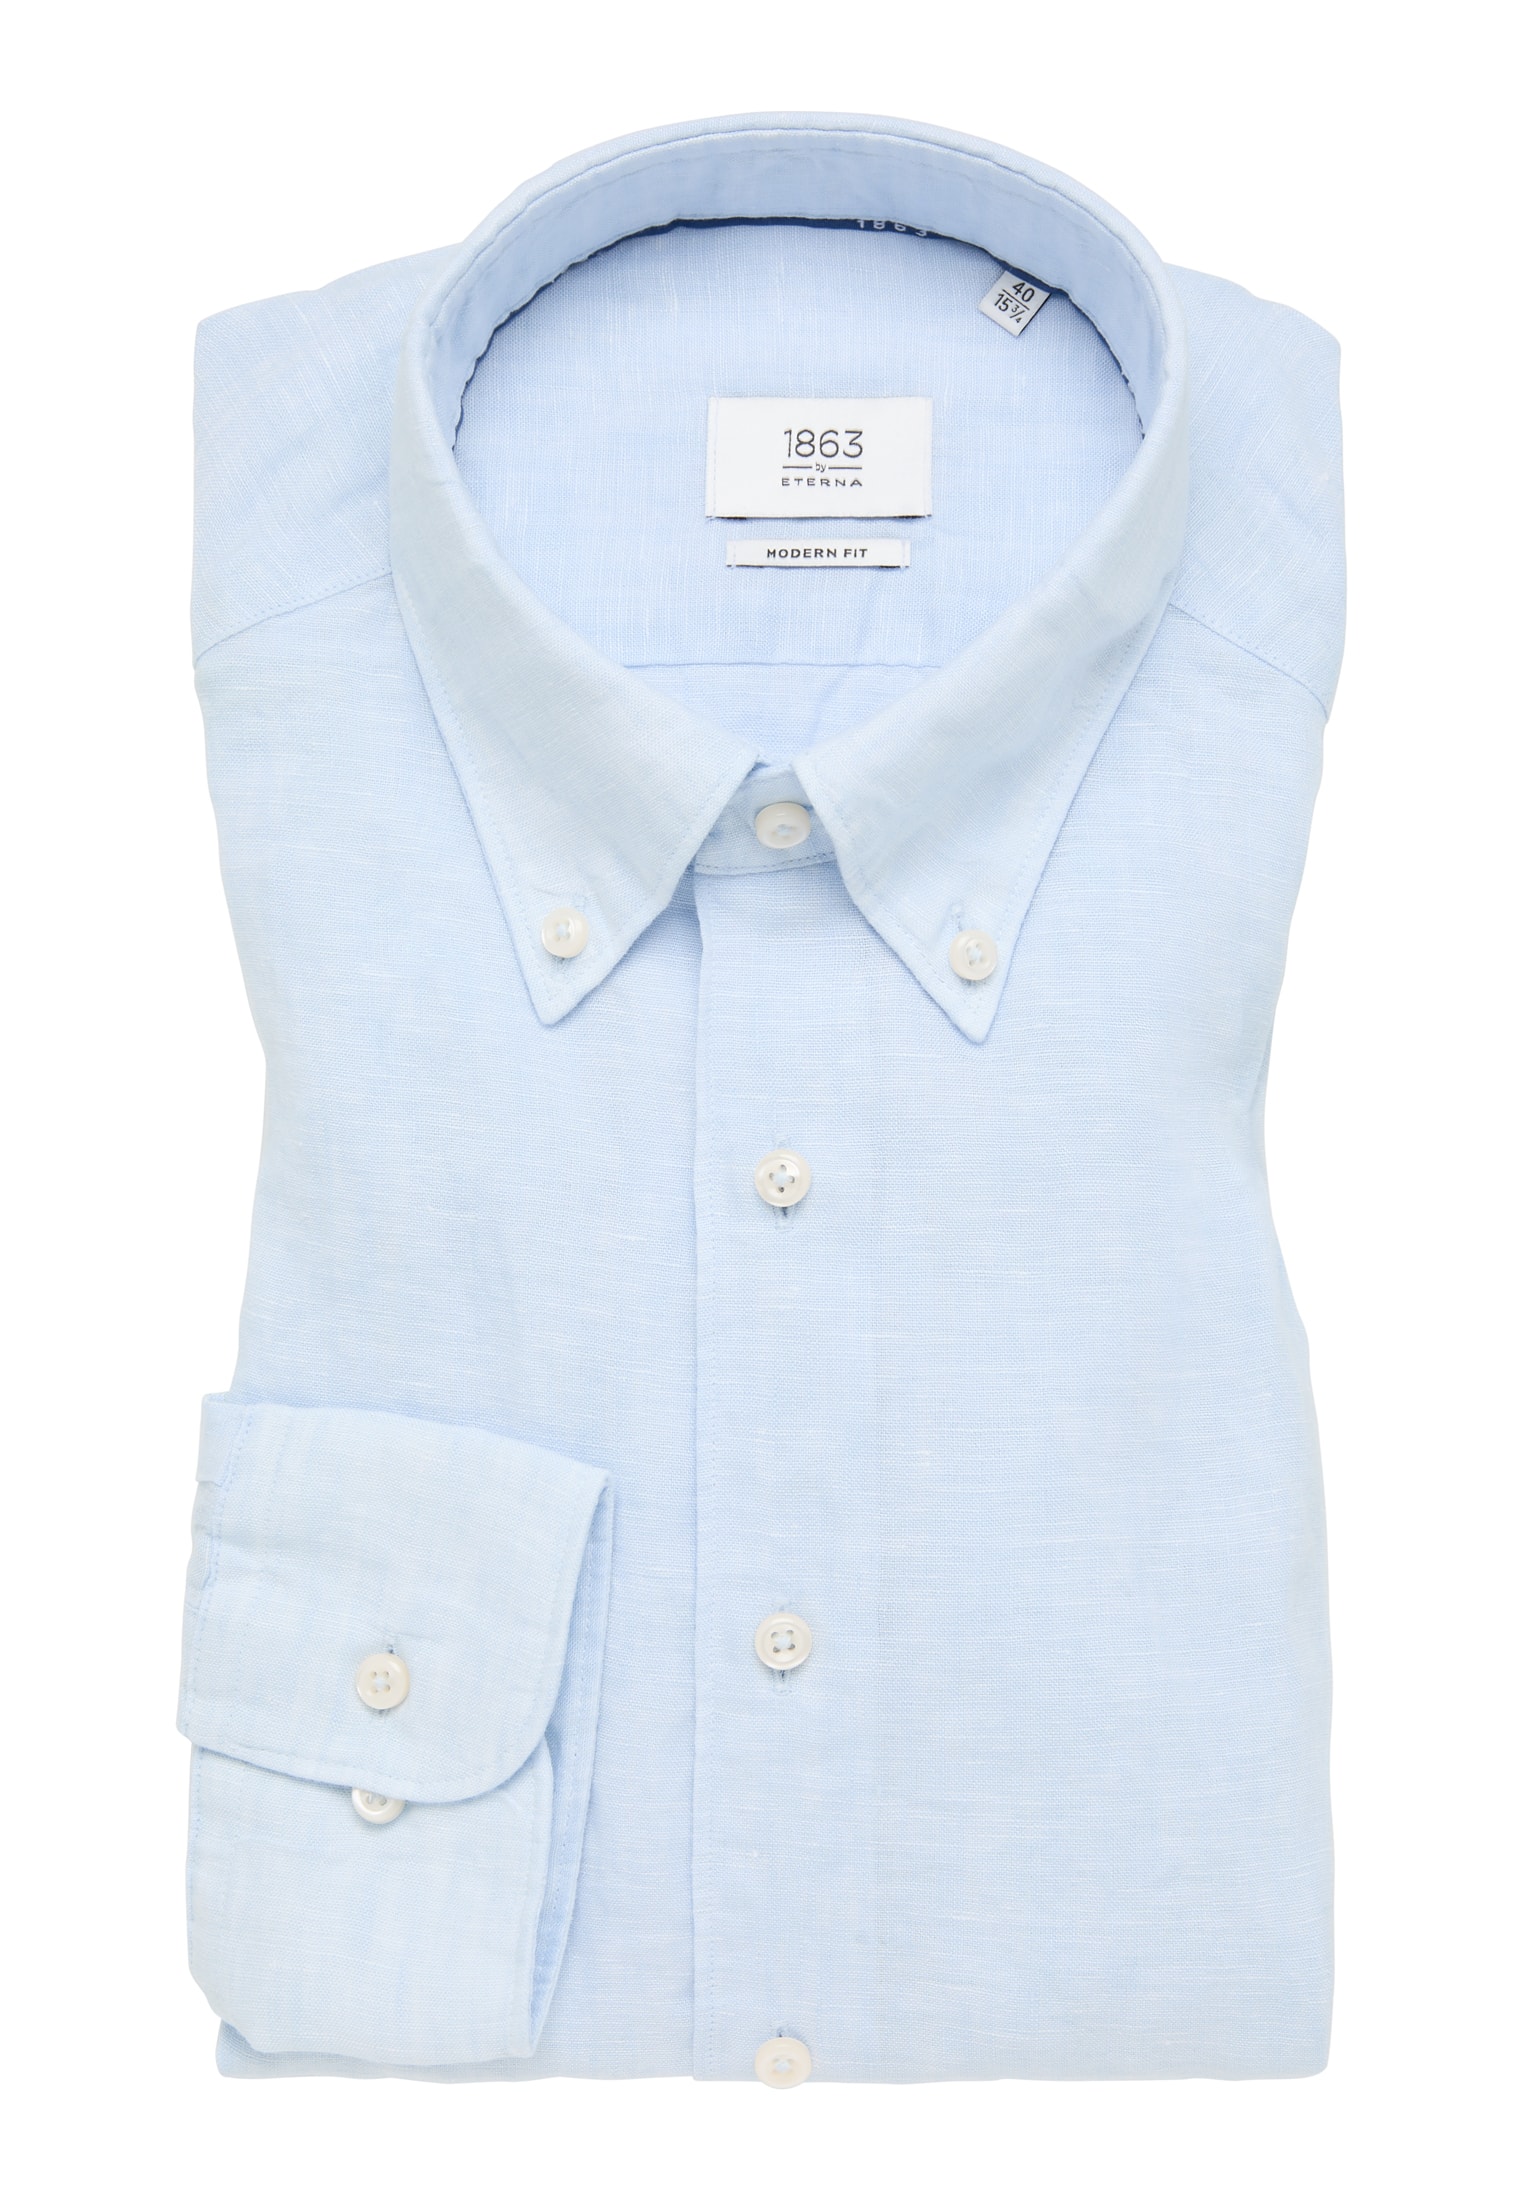 MODERN FIT Shirt in plain sleeve 44 | blue light | | light | blue 1SH11902-01-11-44-1/1 long